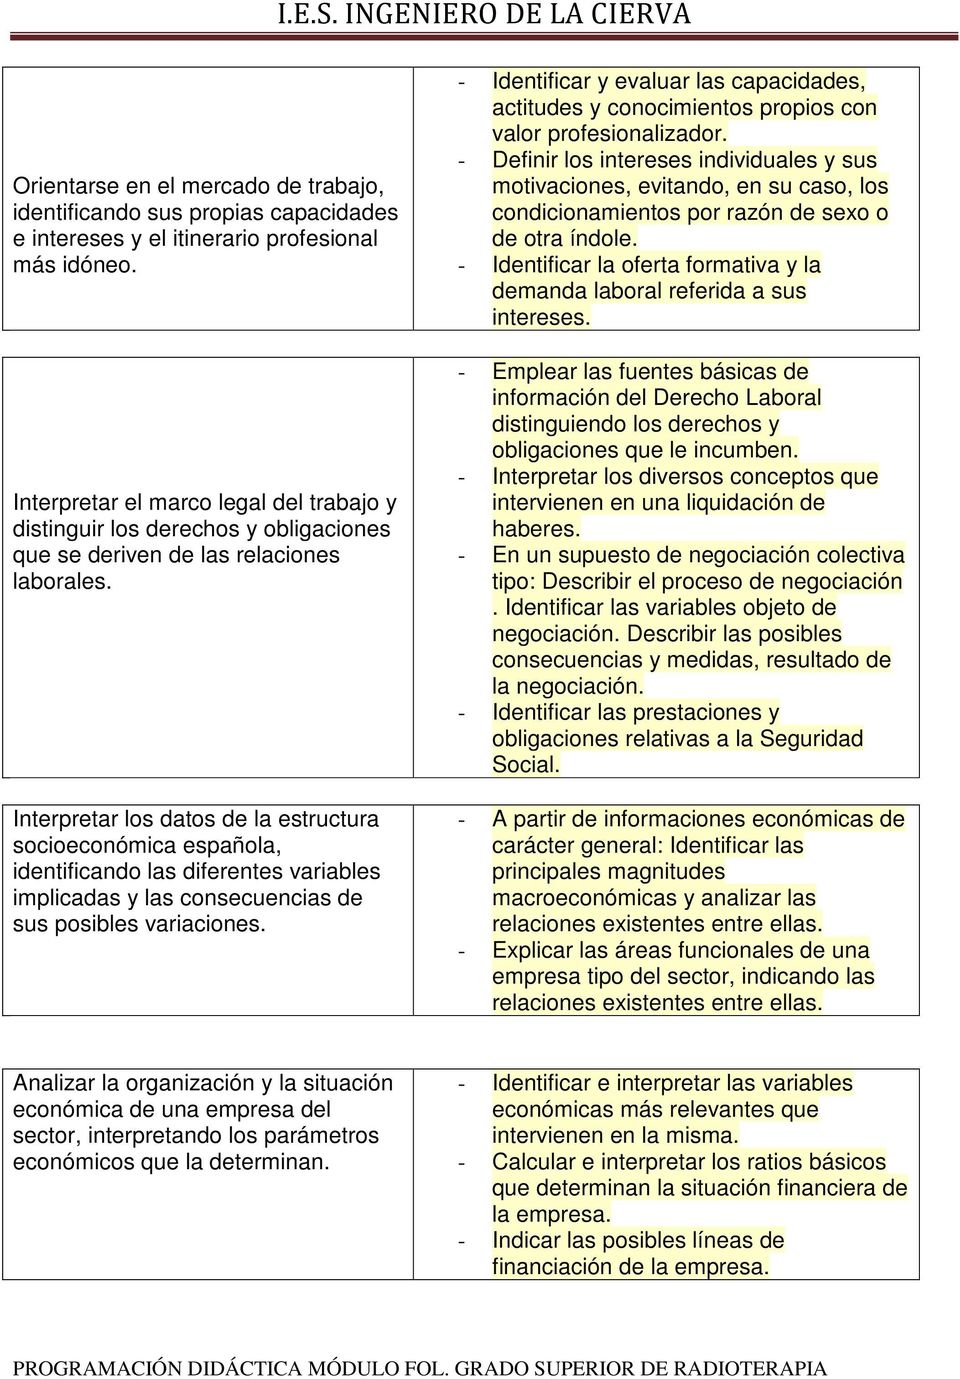 Interpretar los datos de la estructura socioeconómica española, identificando las diferentes variables implicadas y las consecuencias de sus posibles variaciones.